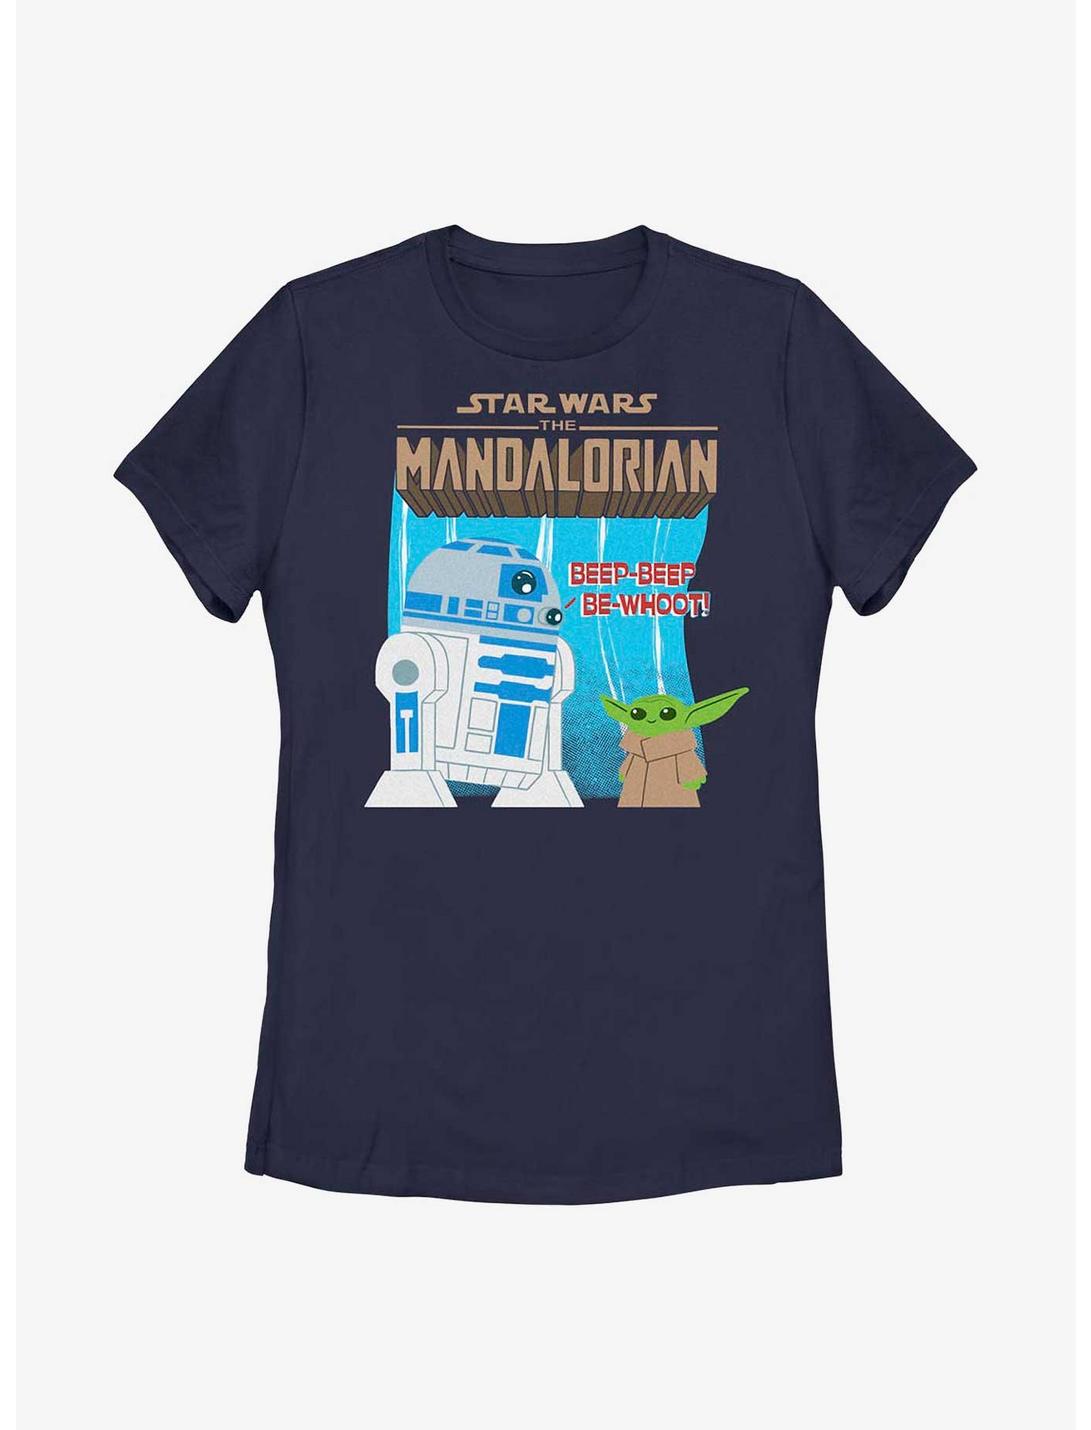 Star Wars The Mandalorian Old Pals Womens T-Shirt, NAVY, hi-res